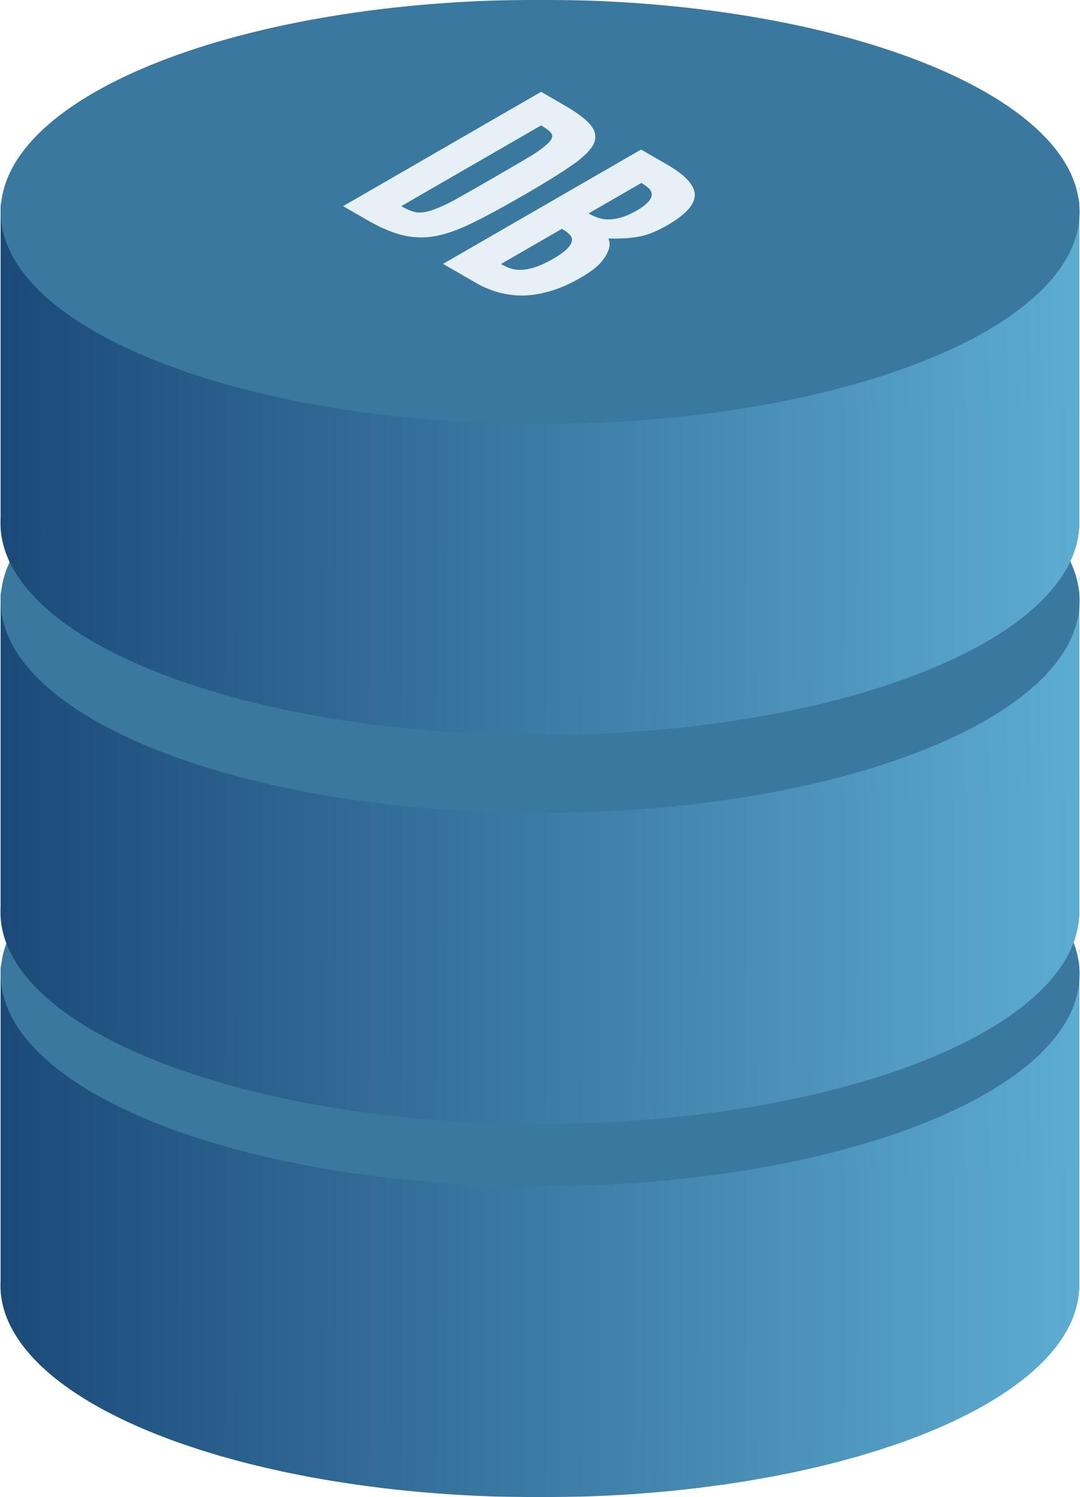 Database symbol png transparent